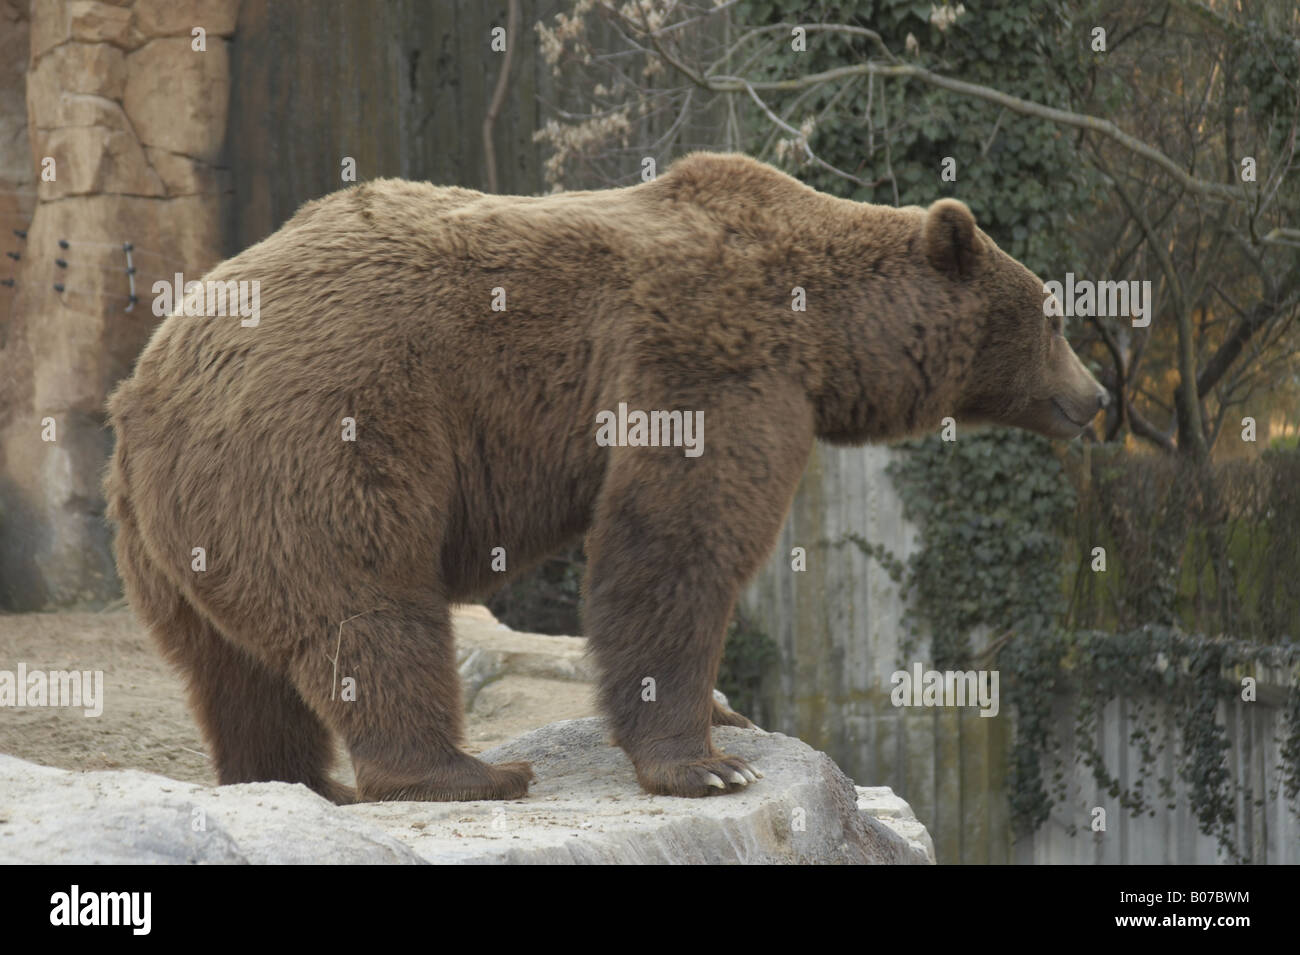 Big brown bear at Madrid zoo Stock Photo